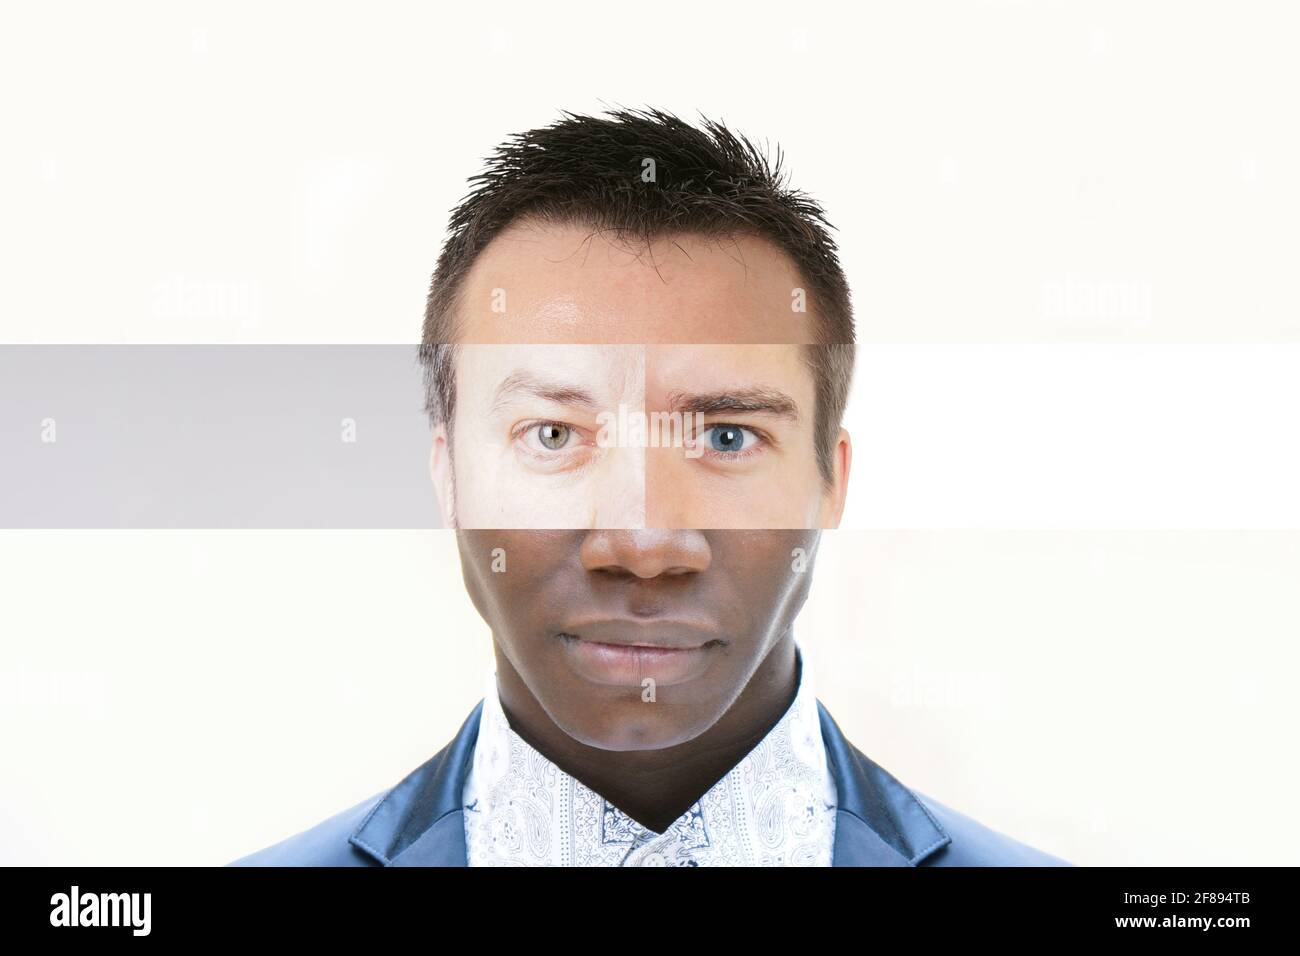 Zusammengesetztes Gesicht aus männlichen Menschen mit verschiedenen Hautfarben - Diversity Collage Stockfoto